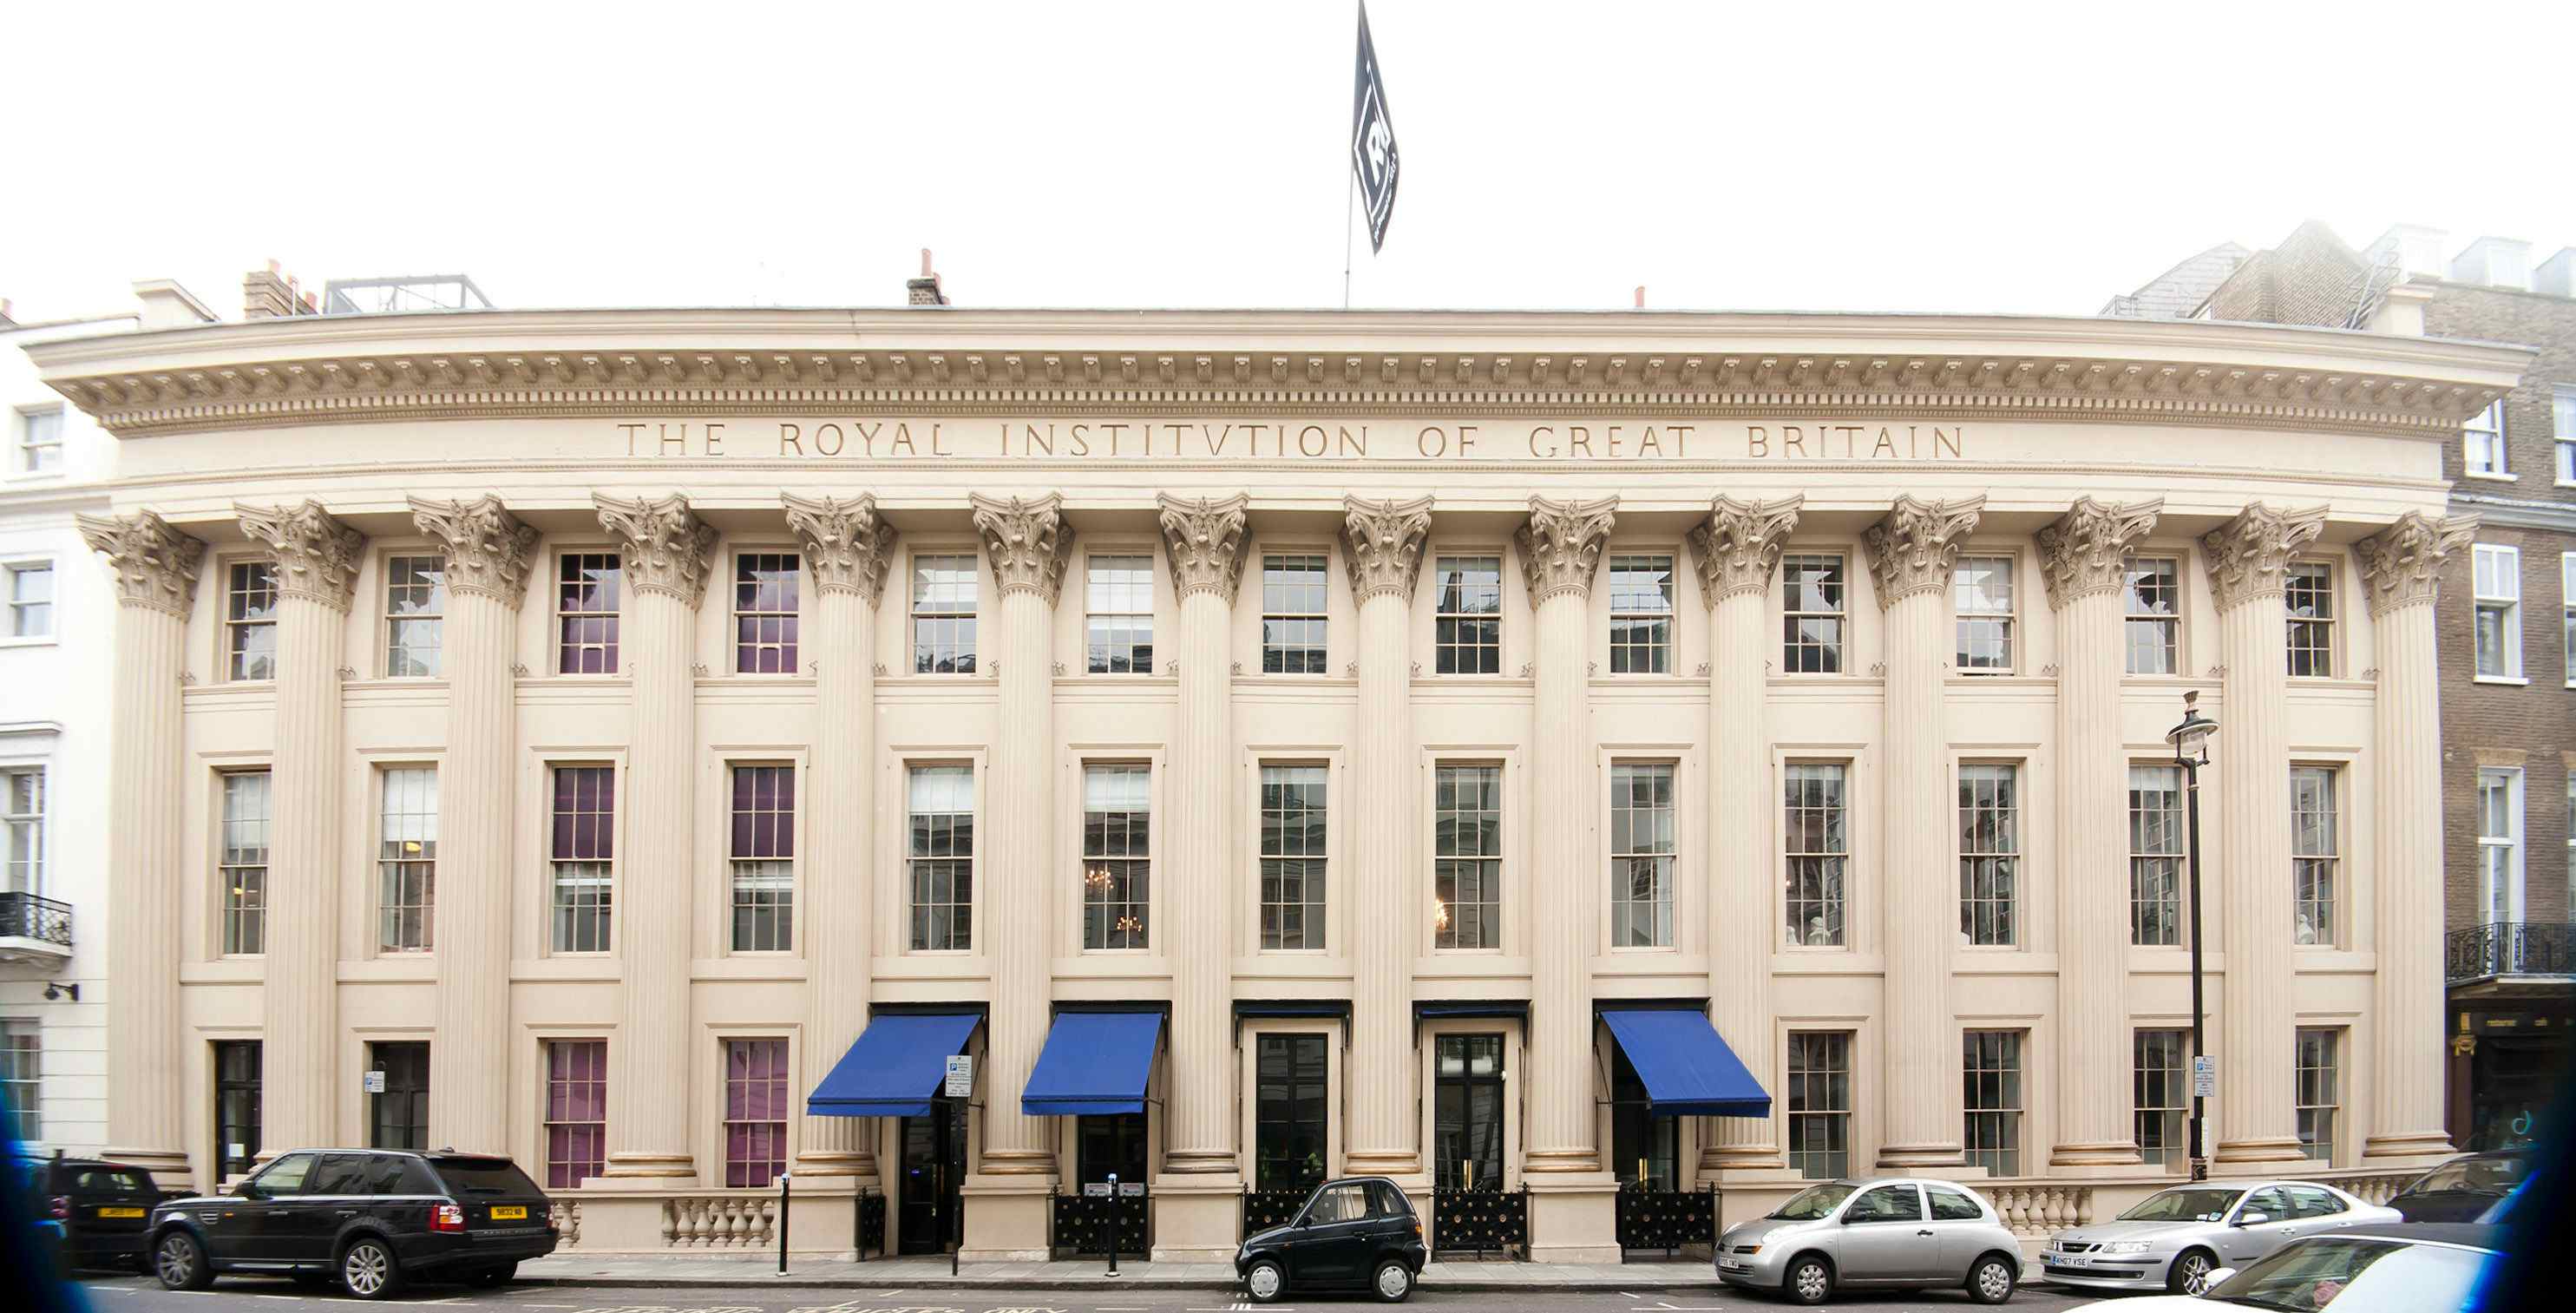 The Royal Institution, The Royal Institution